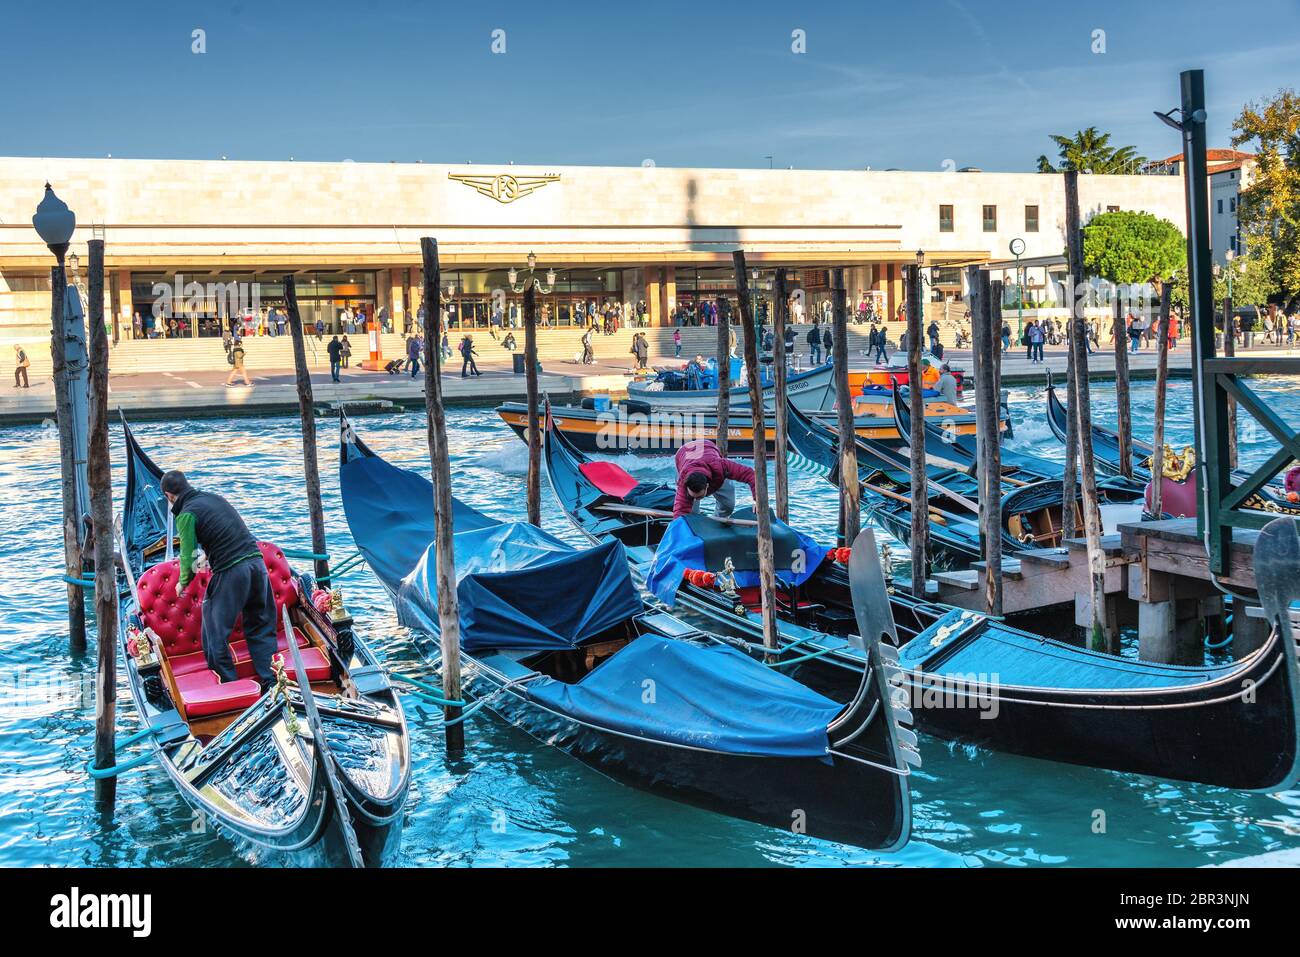 Immagine simbolica di Venezia: Le gondole ormeggiate tra i pali del Canal Grande, di fronte alla stazione ferroviaria di Santa Lucia Foto Stock